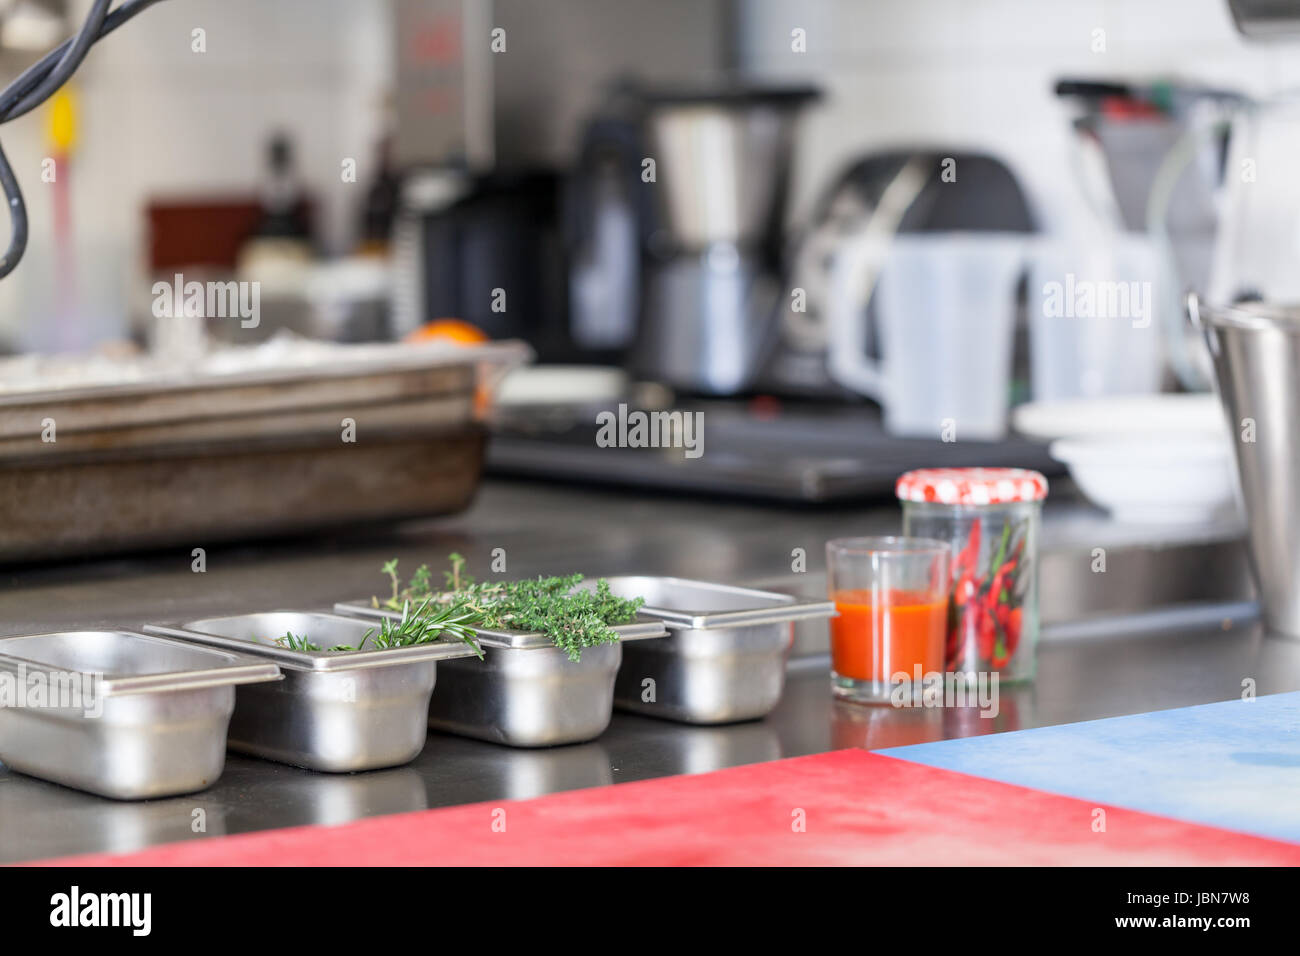 Ristorante küche innen kochen kochfeld einrichtung industriell großküche kantine catering Foto Stock